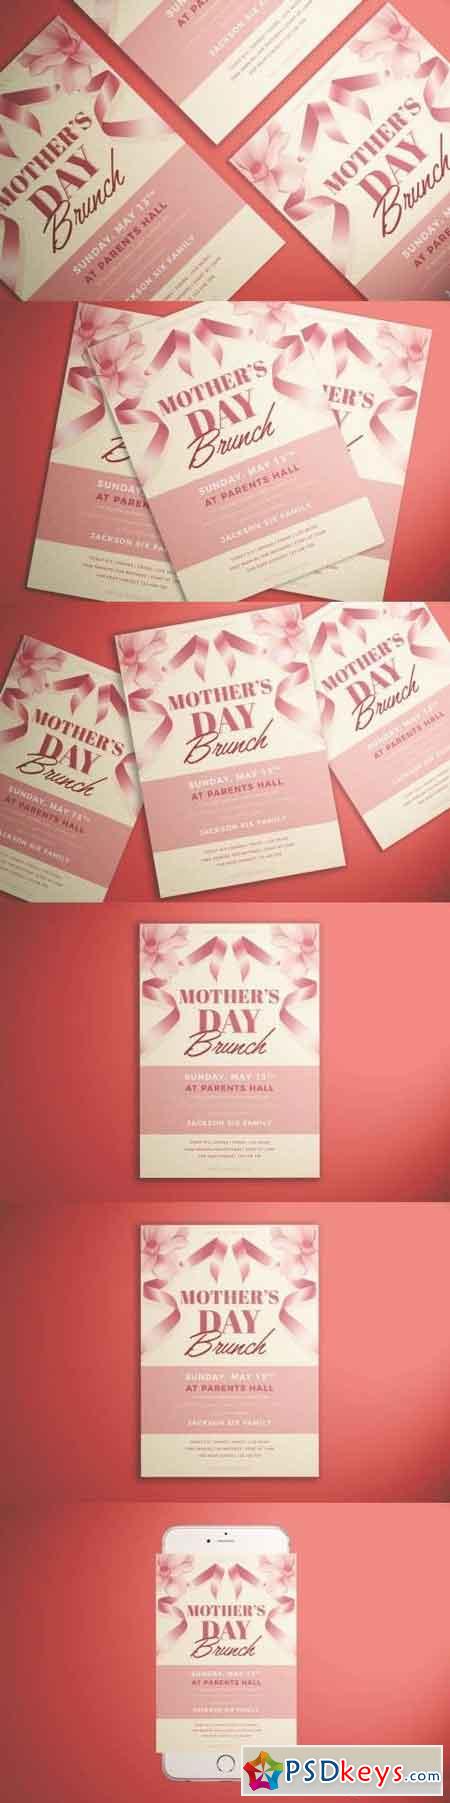 Mother's Day Brunch Flyer